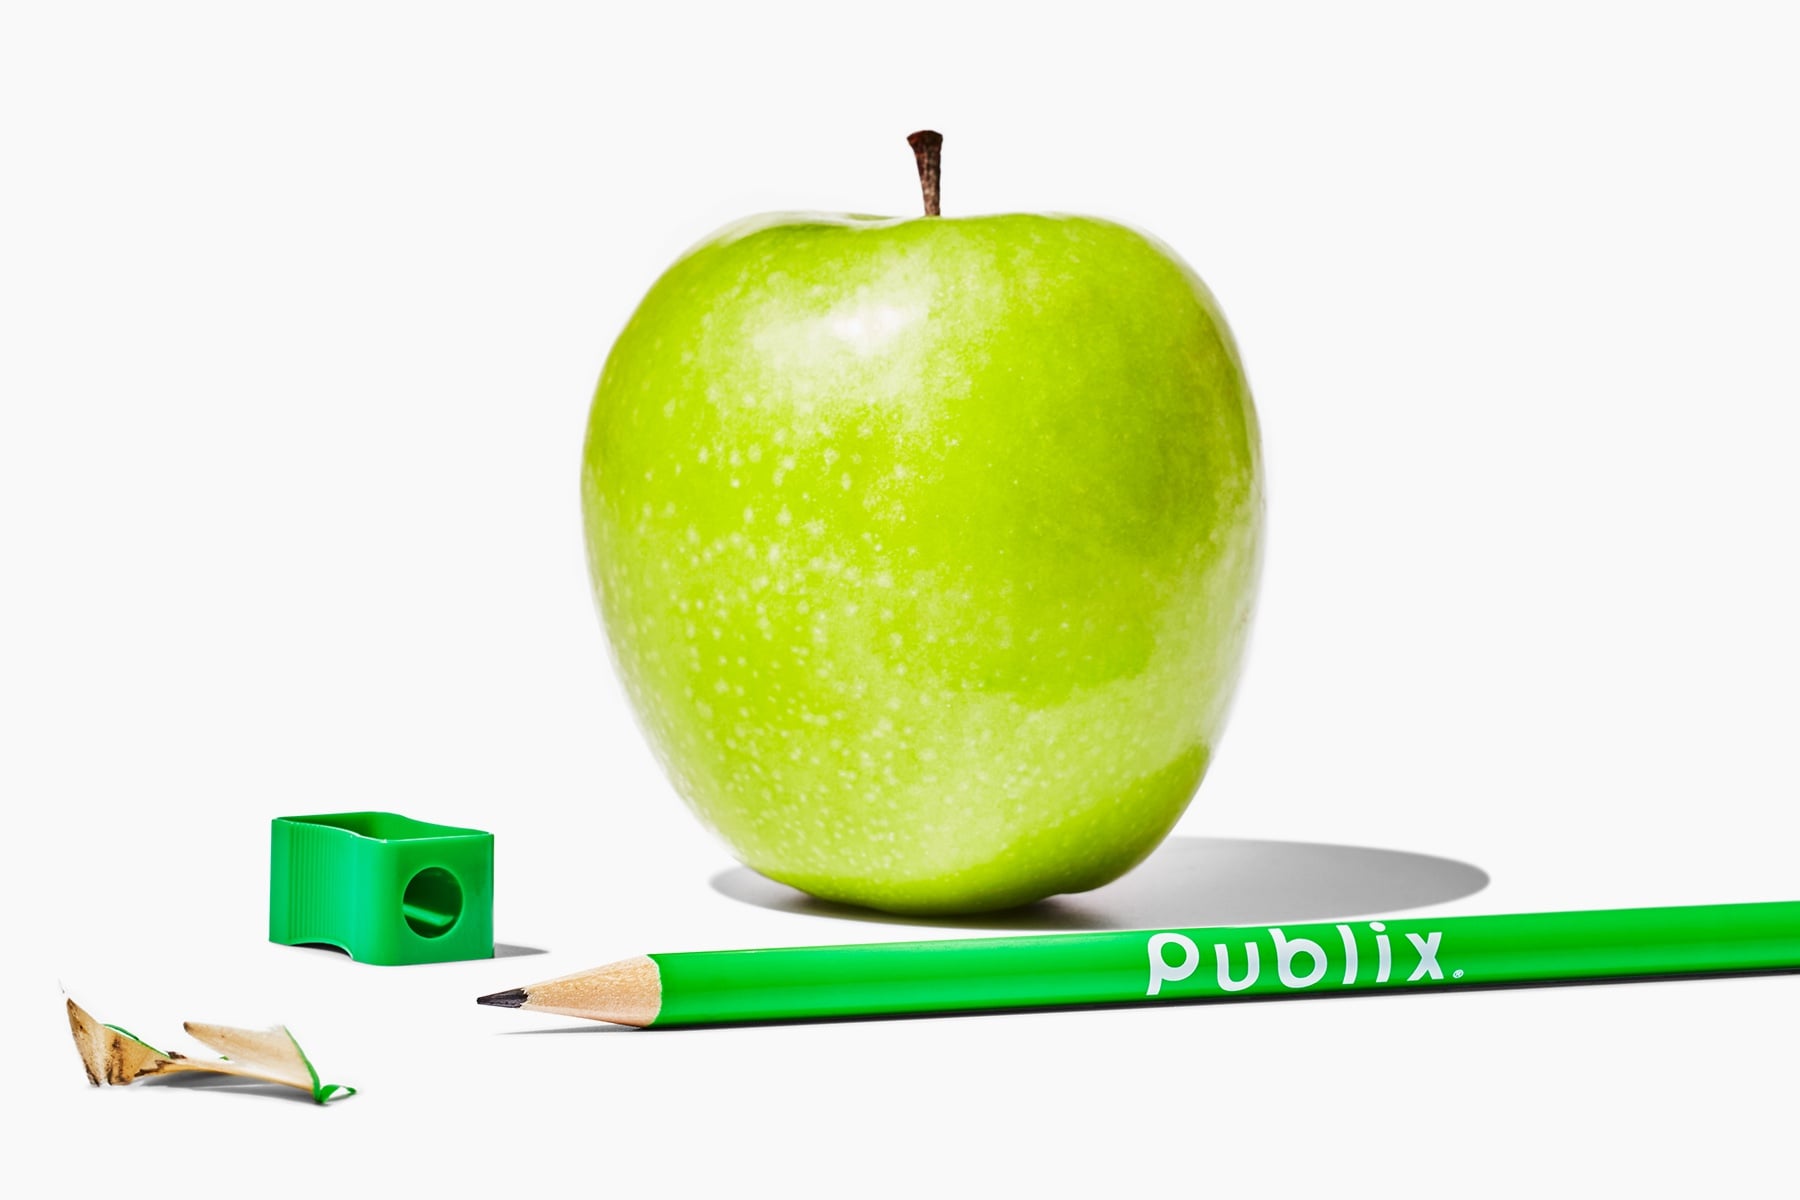 Apple and Publix pencil 